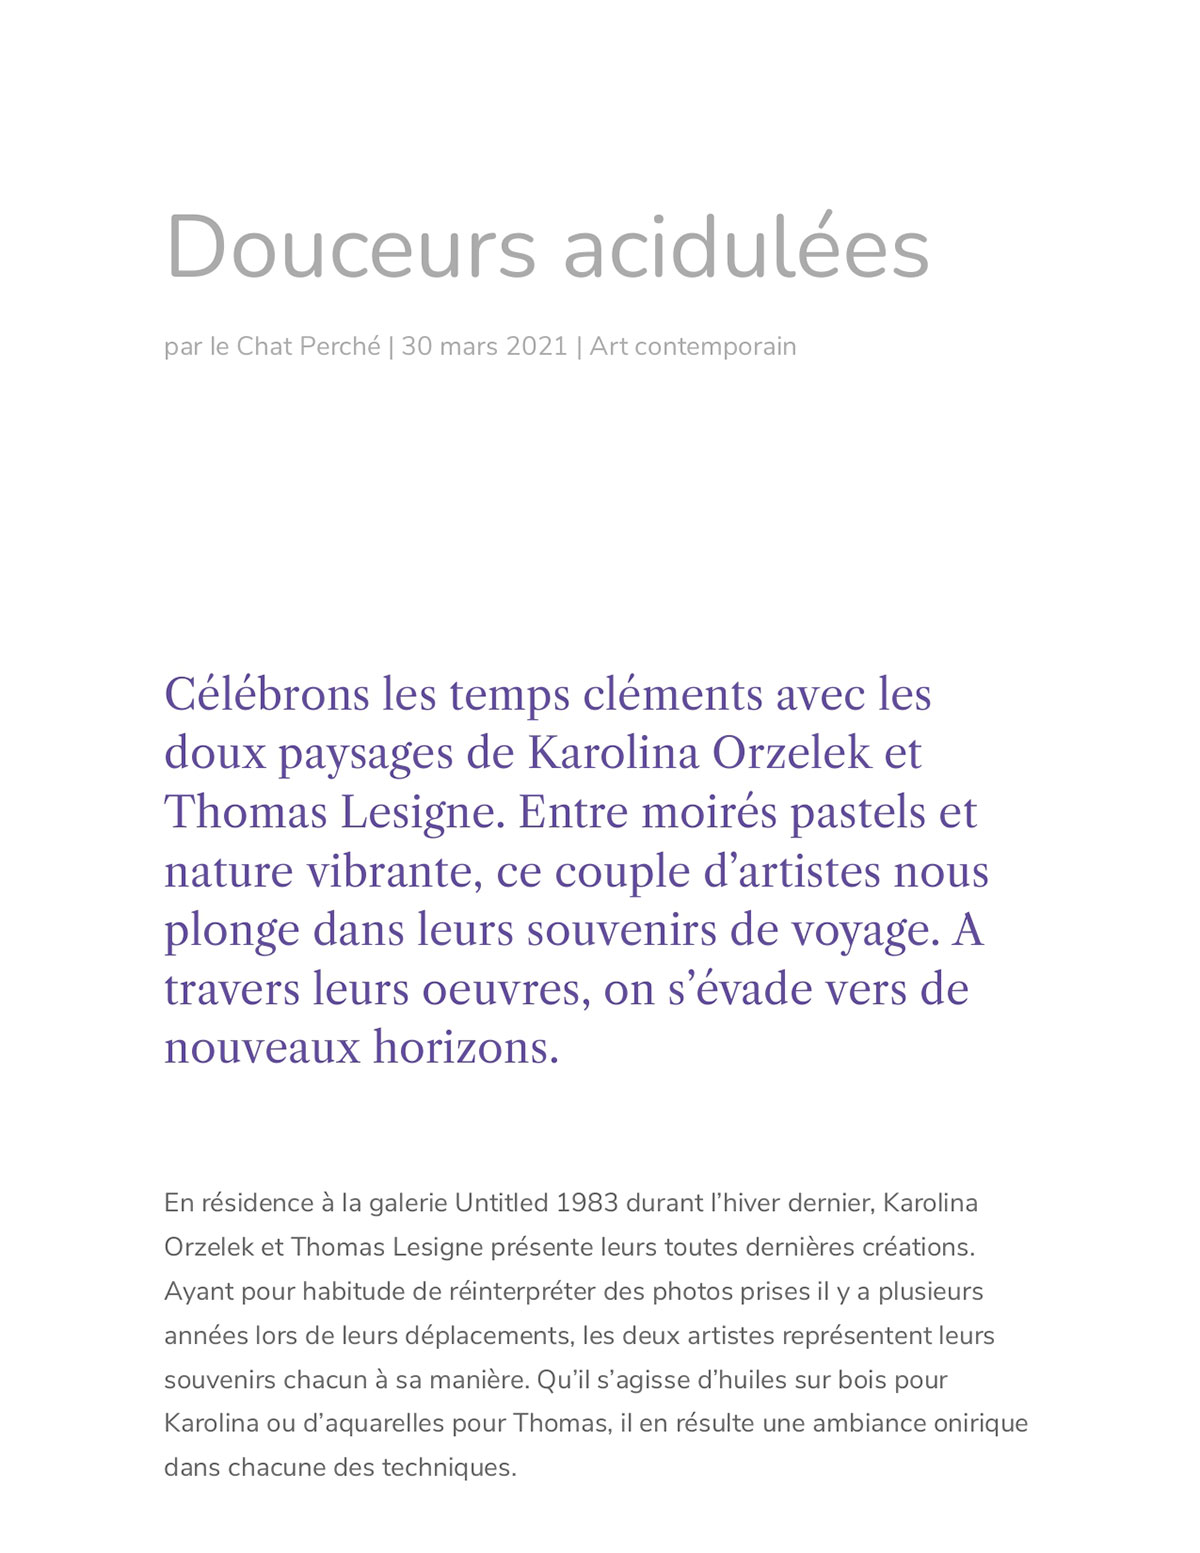 "Douceurs acidulées", Carine Bovey, Le Chat Perché, March 30, 2021